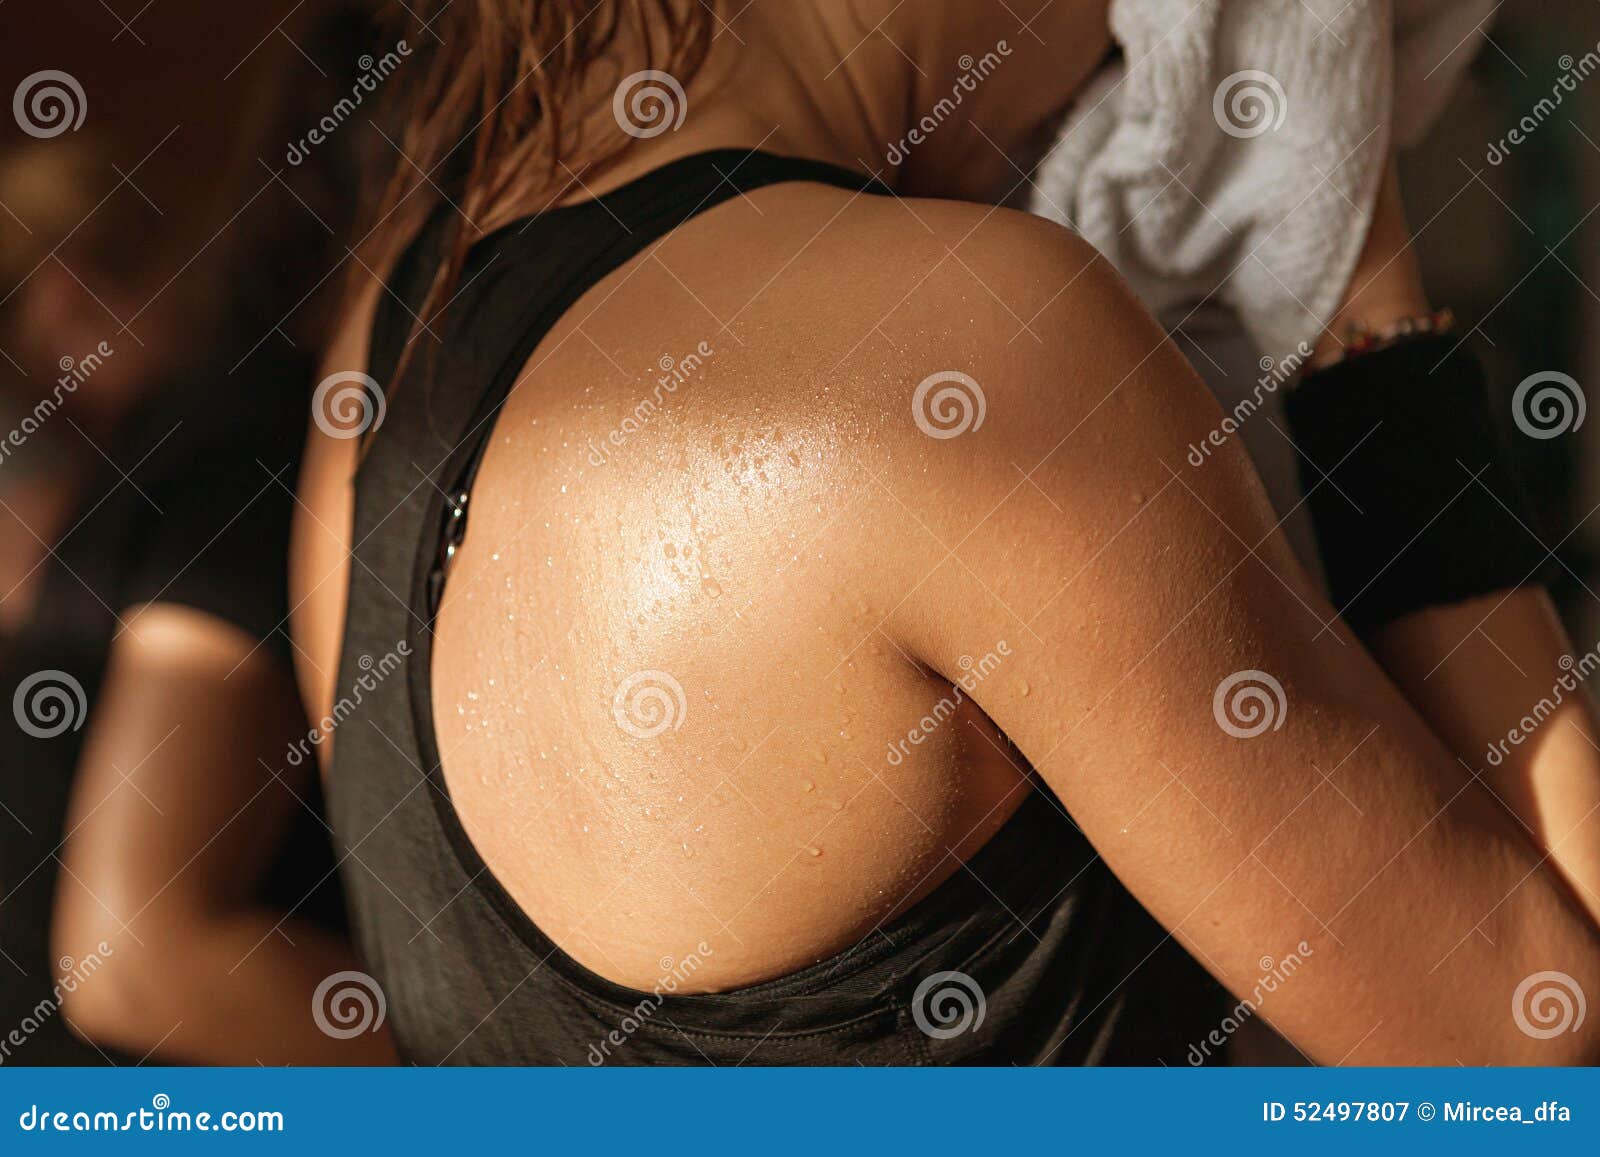 detail gym shot - sweat skin of a woman's back; spinning, aerobi